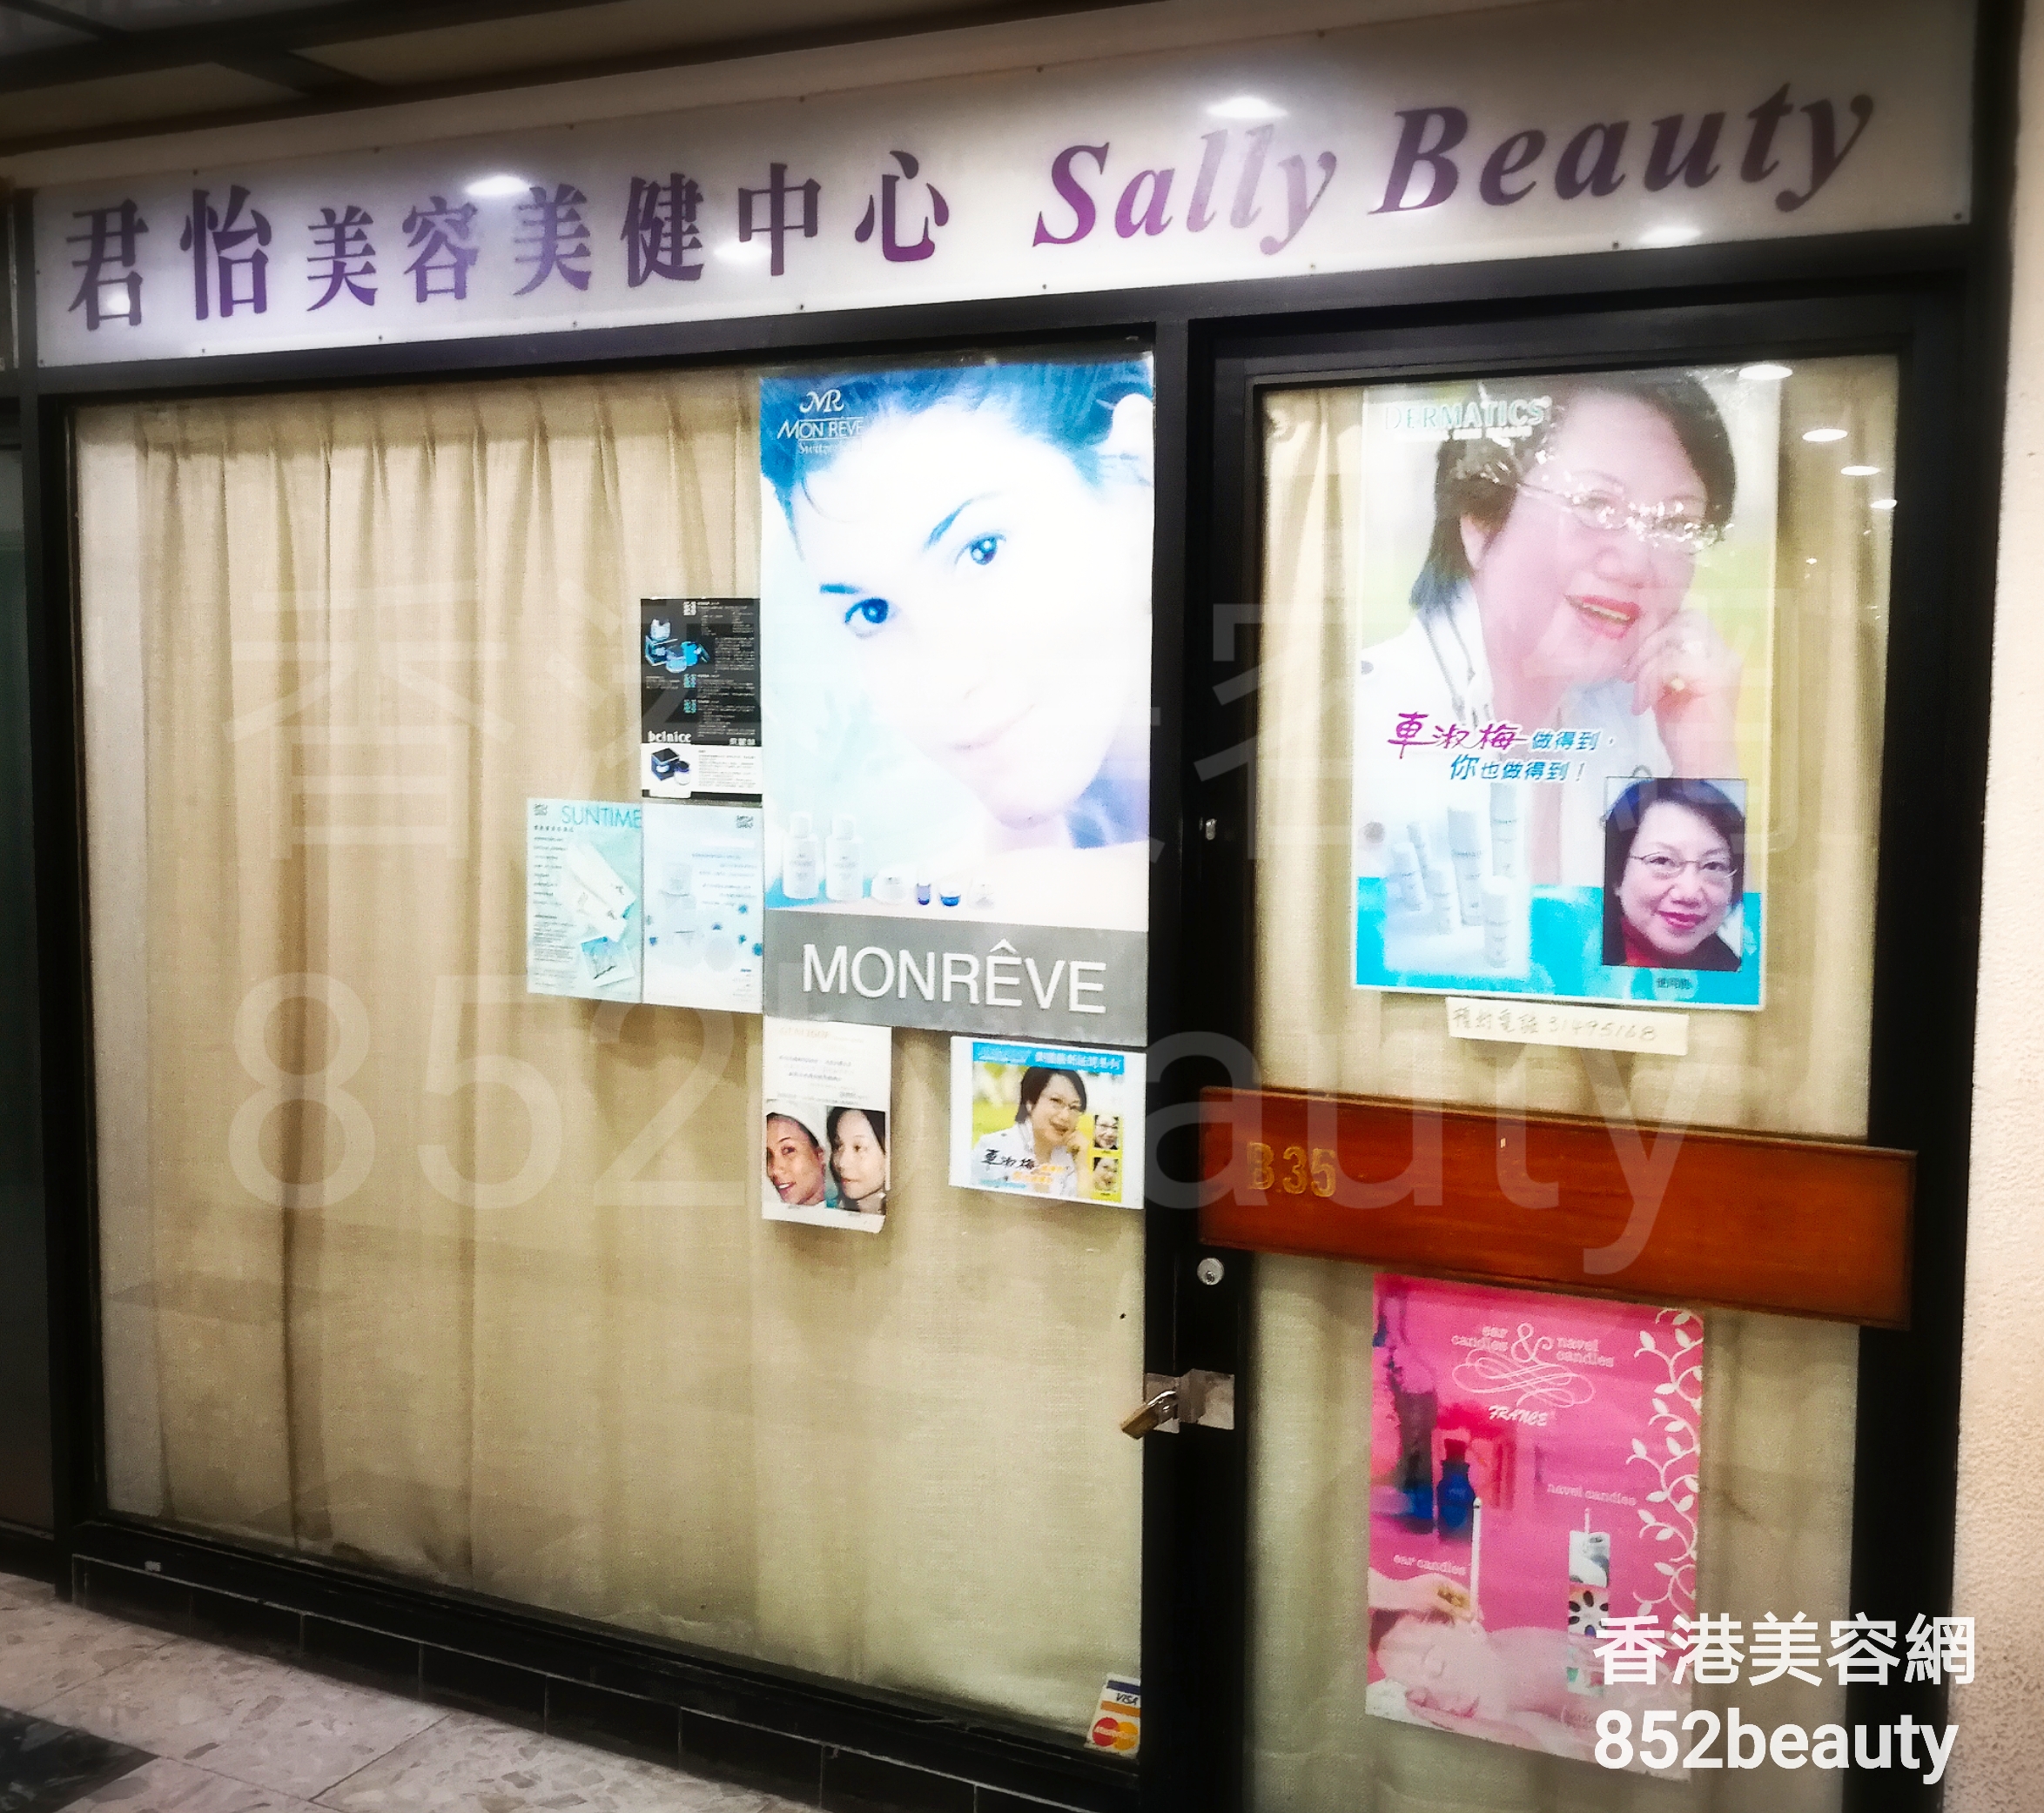 香港美容網 Hong Kong Beauty Salon 美容院 / 美容師: 君怡 美容美健中心 Sally Beauty